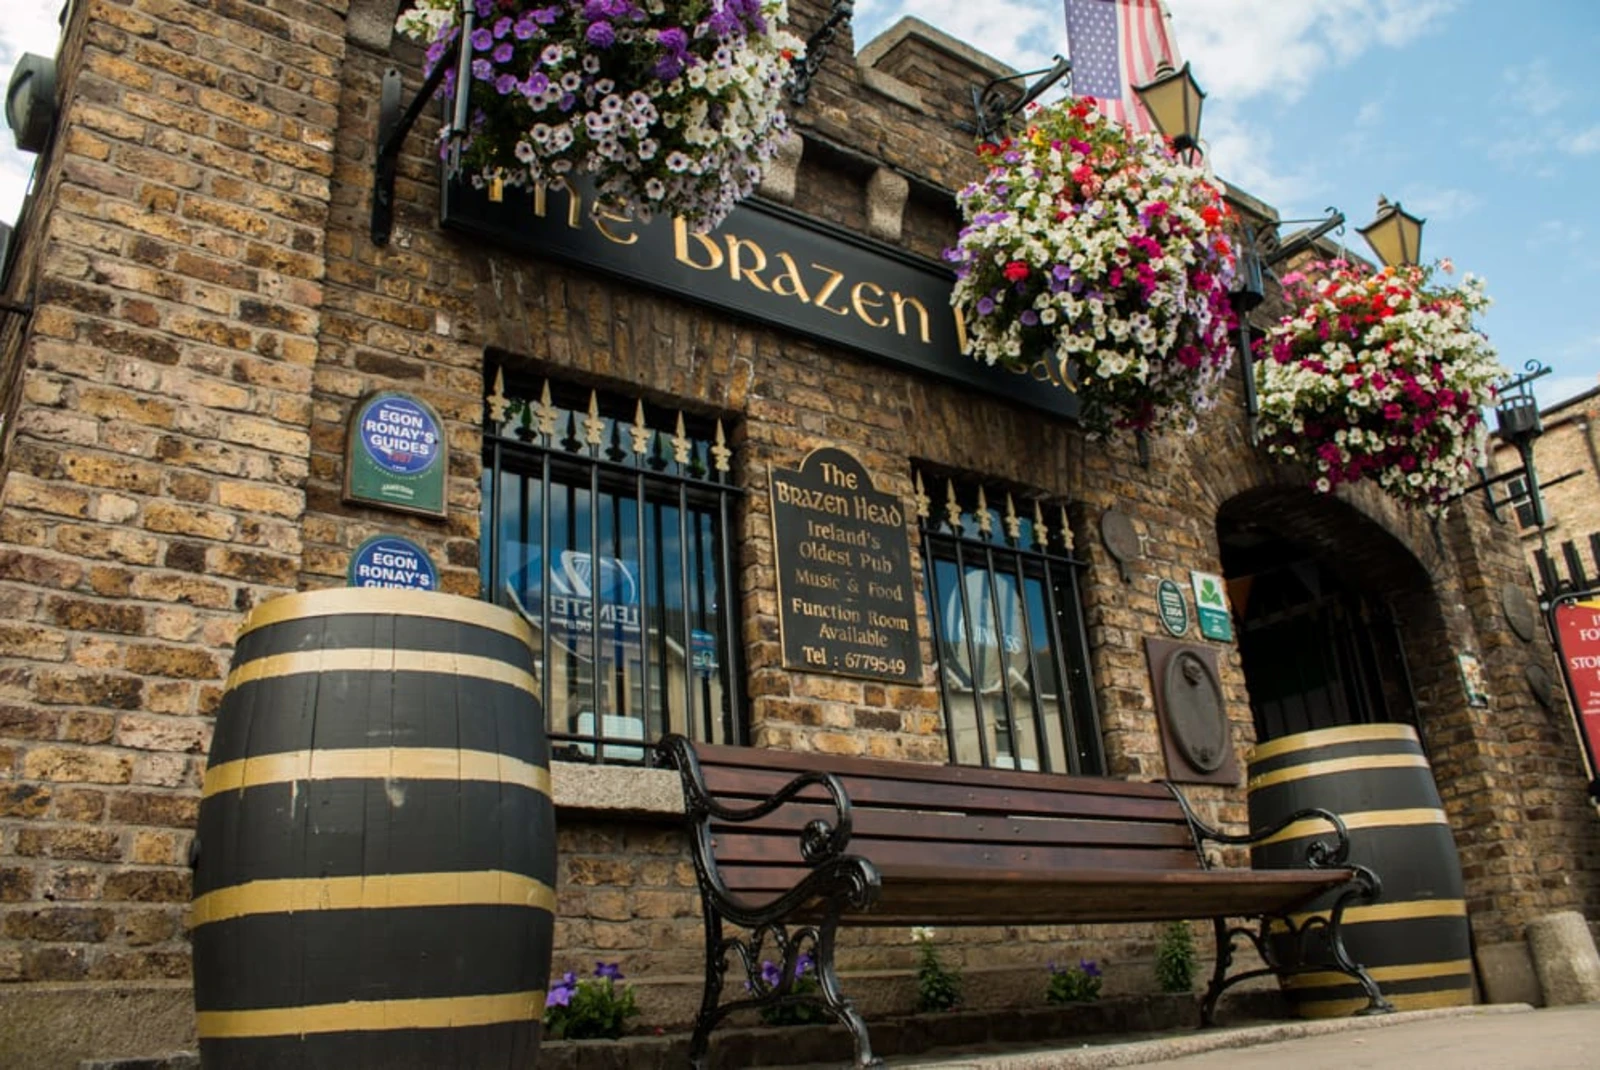 Brazen Head in Ireland is the oldest pub in Dublin.